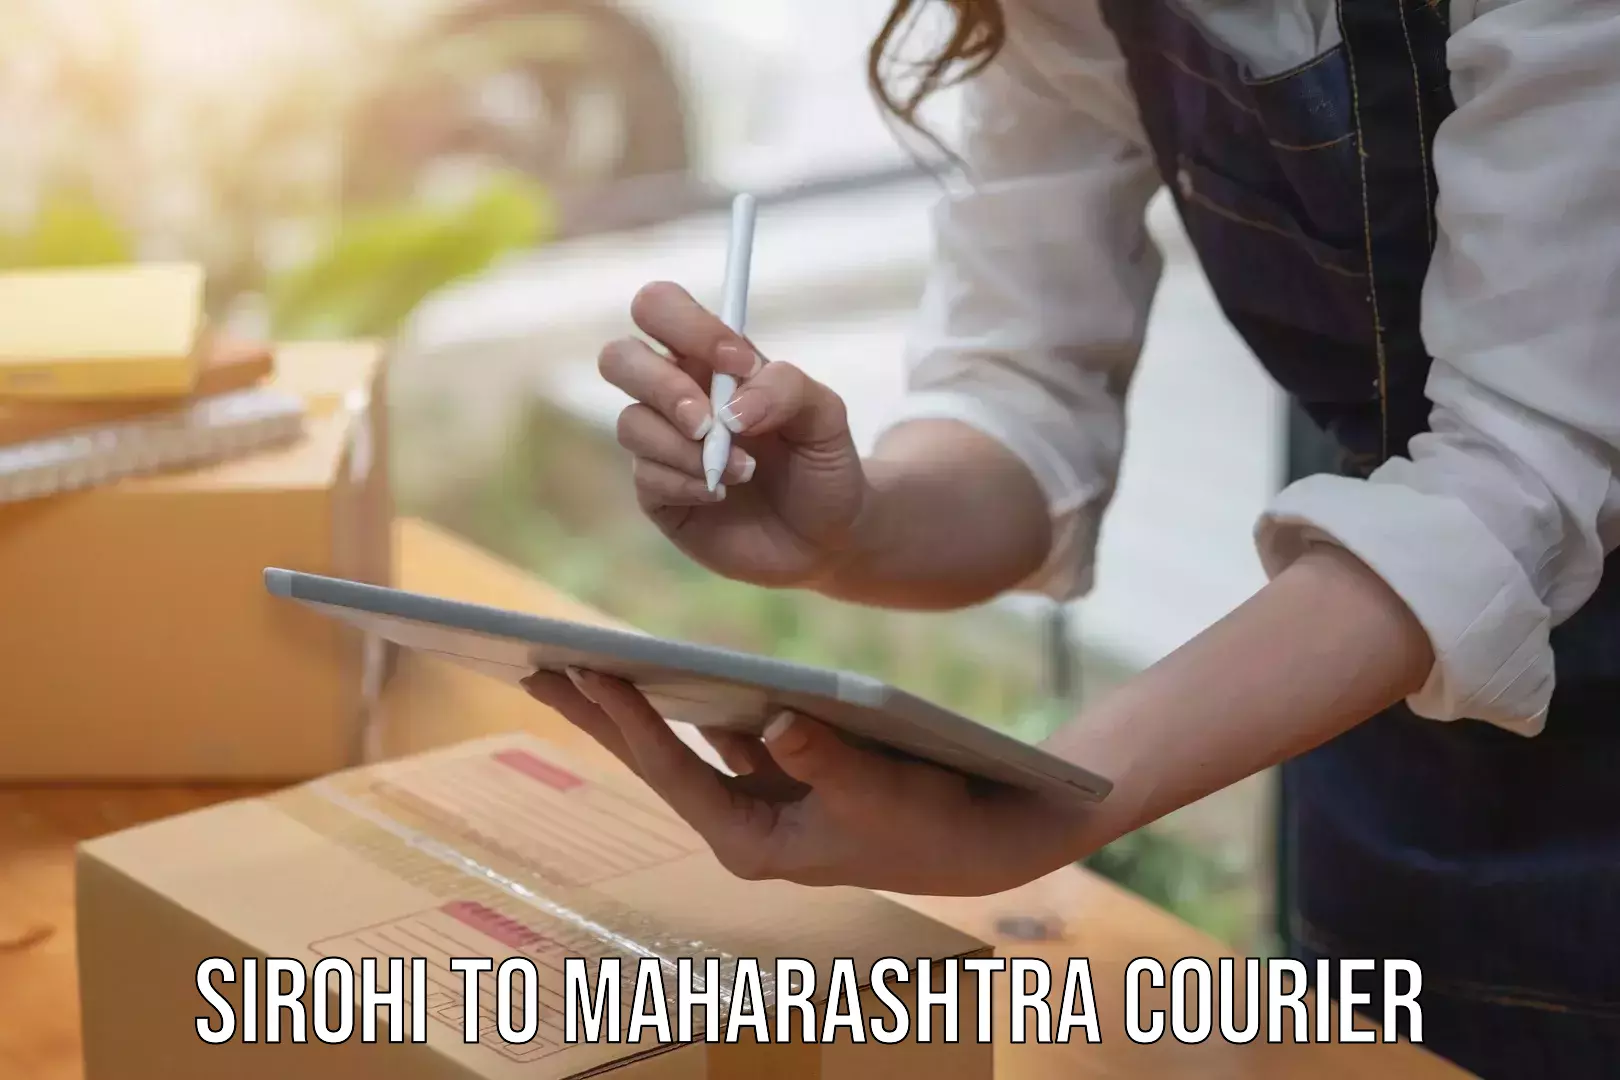 Courier service innovation Sirohi to Maharashtra